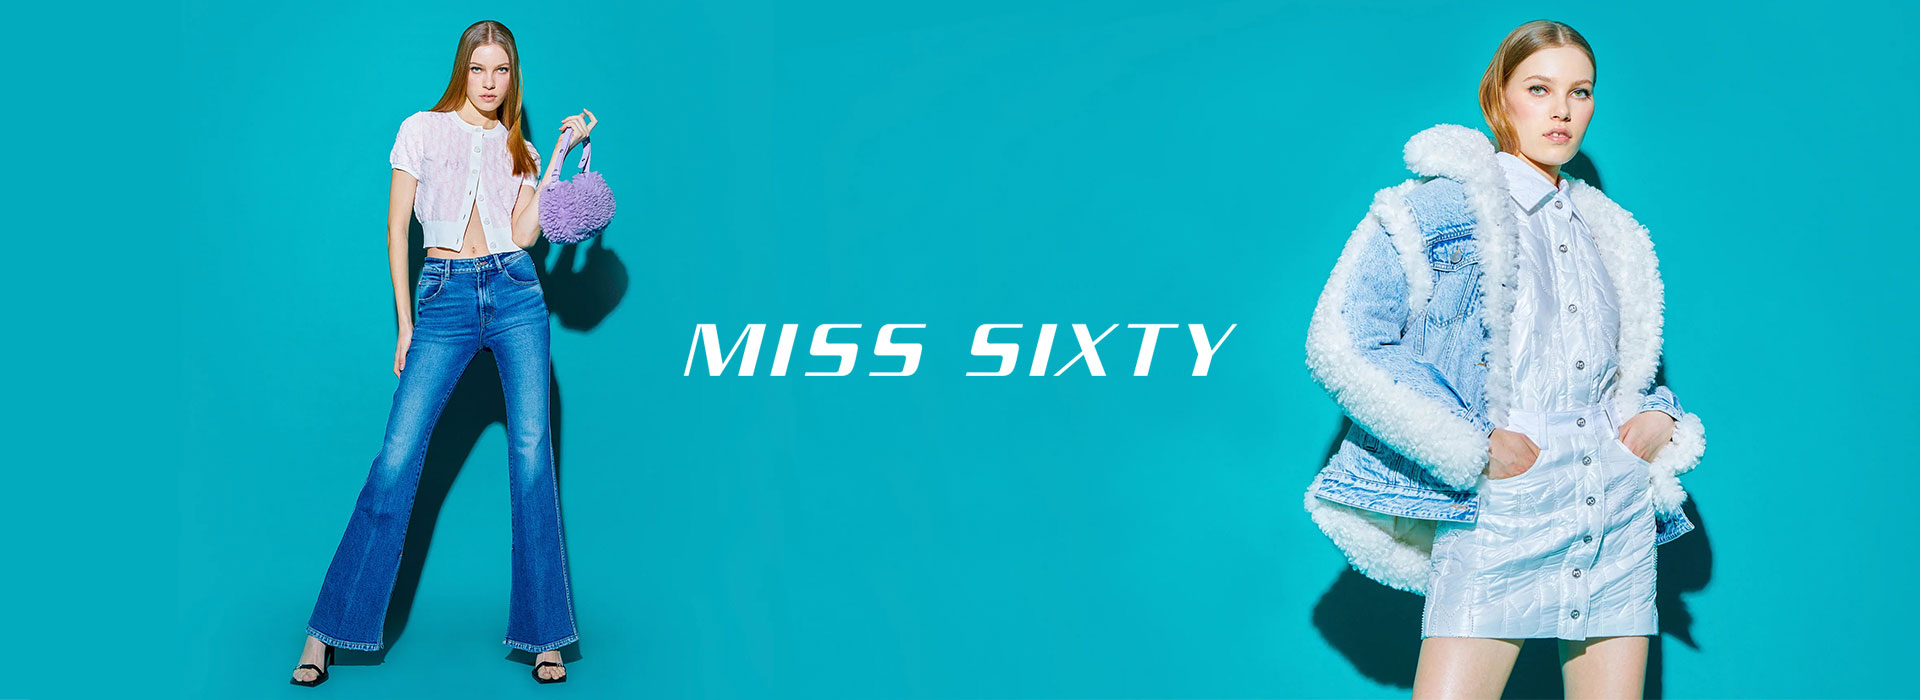 Miss Sixty – Street style glamur u stilu 2000-ih